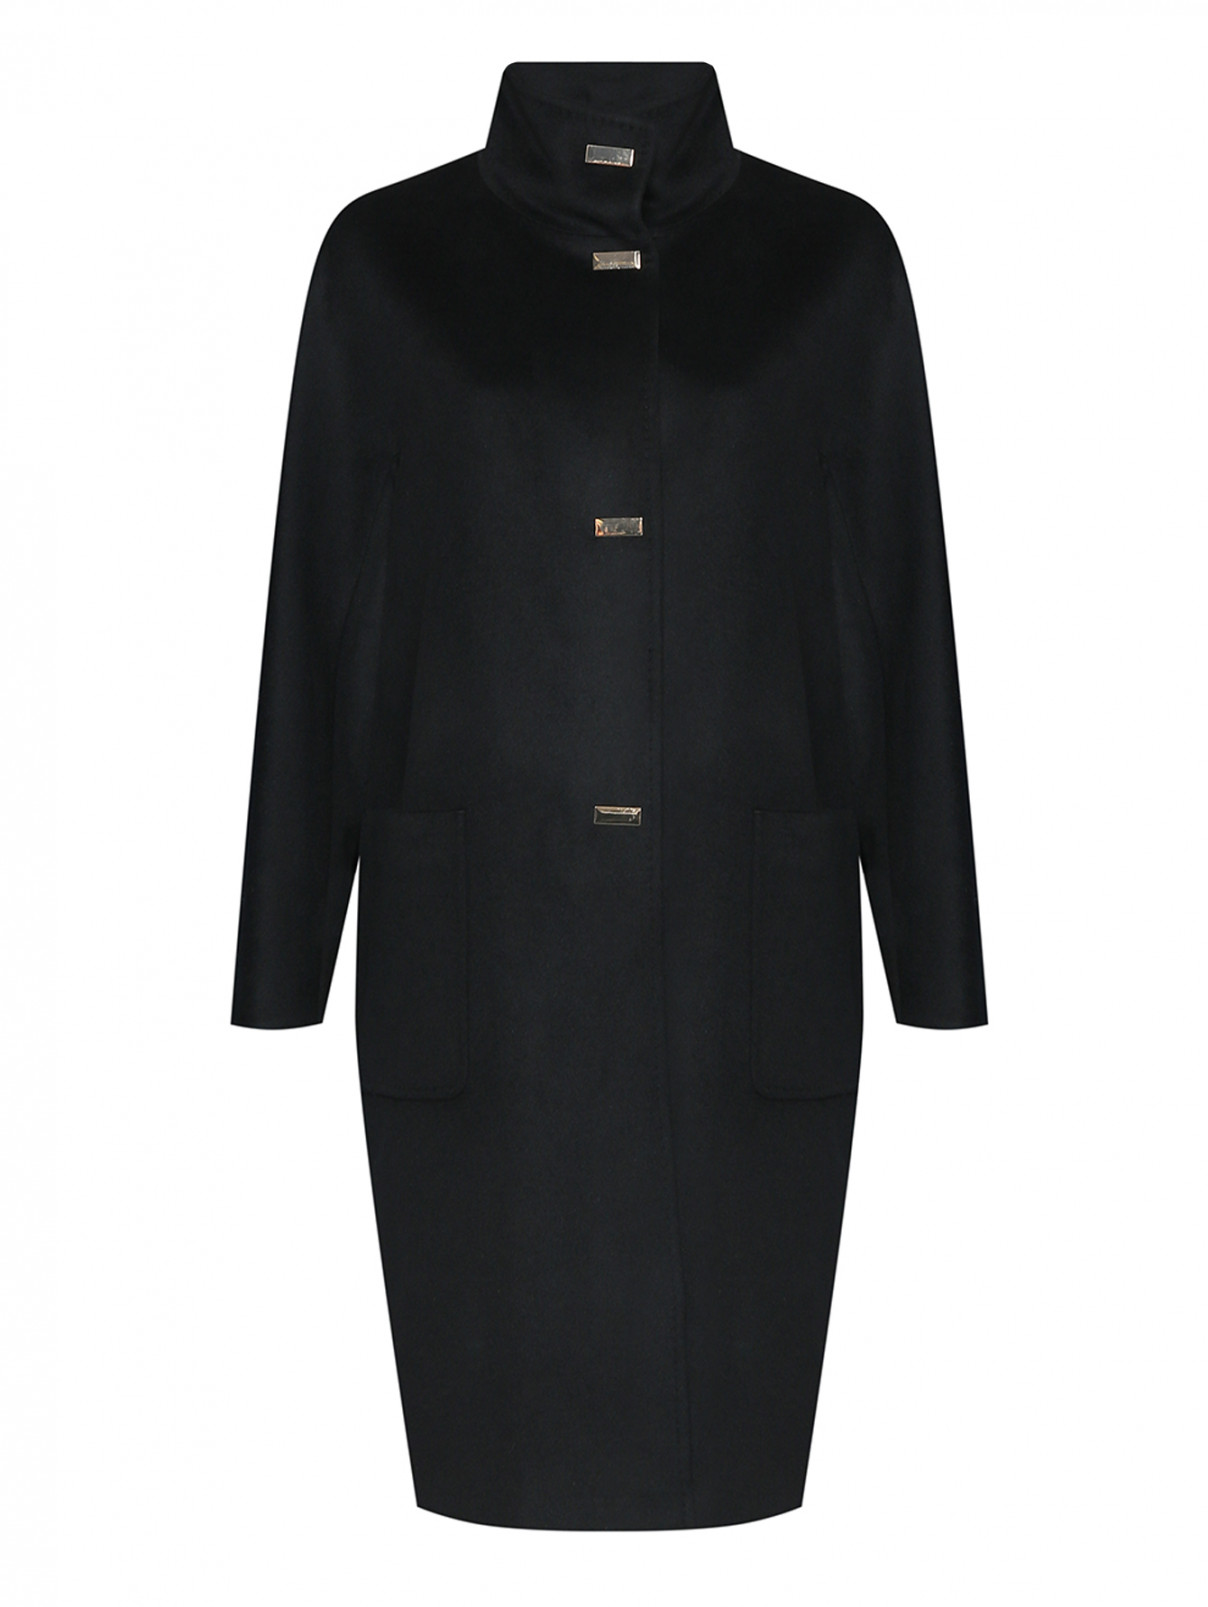 Пальто из шерсти на кнопках Marina Rinaldi  –  Общий вид  – Цвет:  Черный